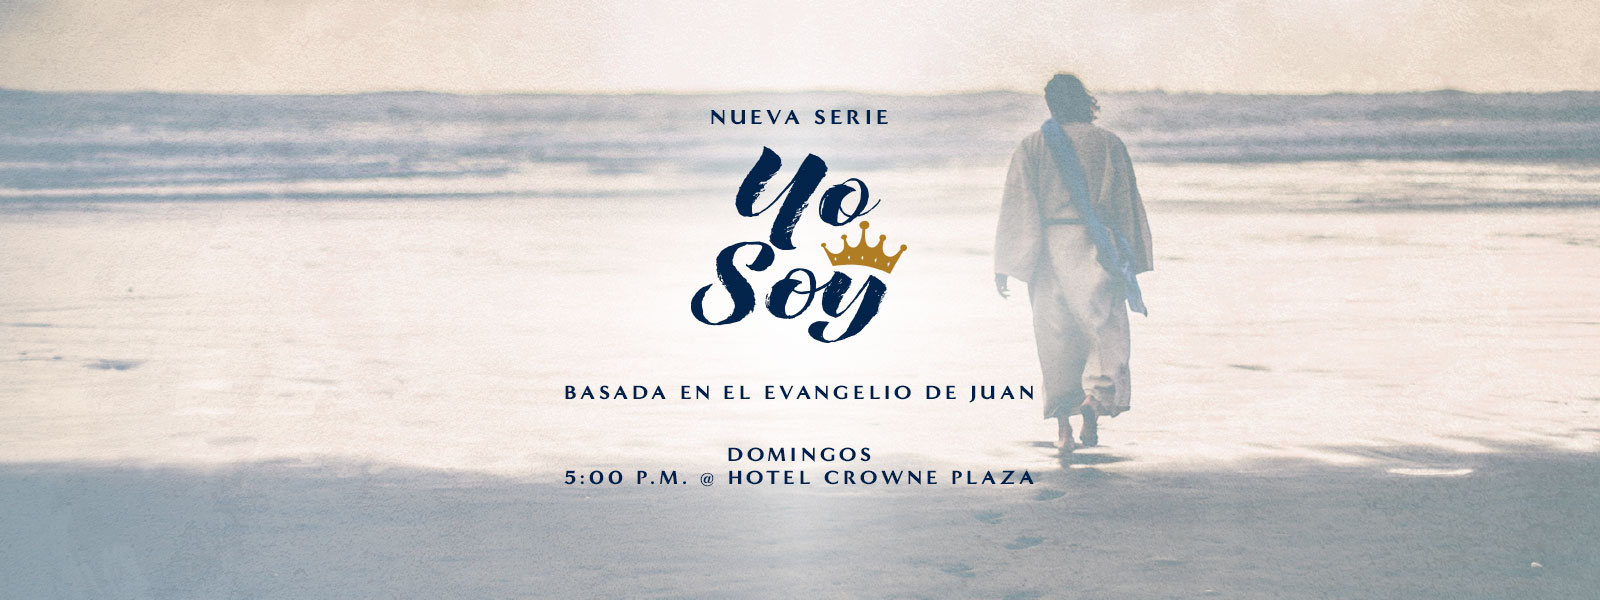 Nueva Serie | Yo Soy | Basada en el Evangelio de Juan